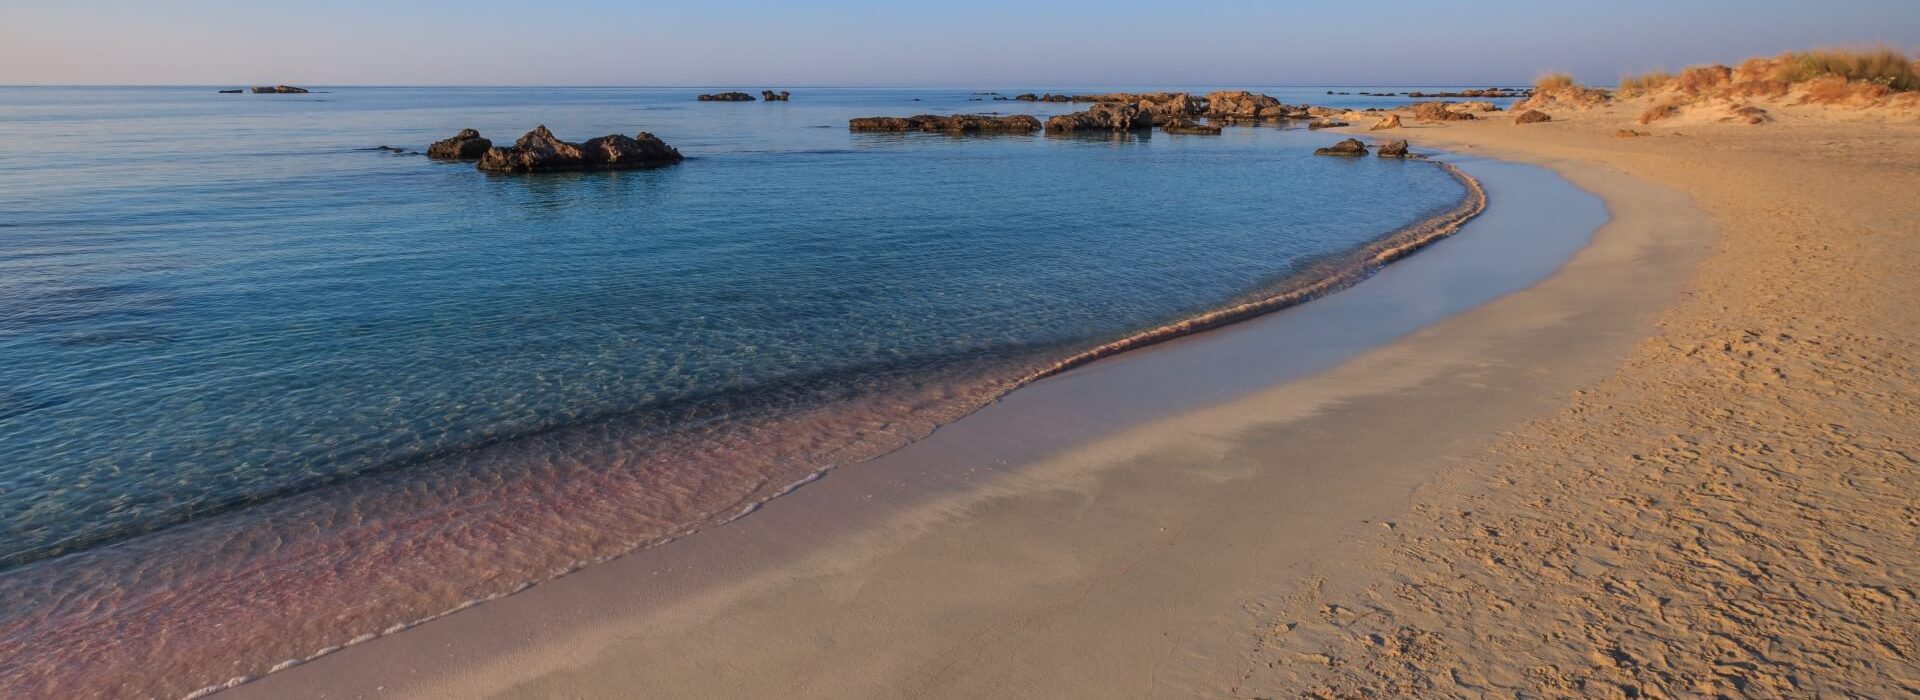 elafonisi-beach-crete-greece-2021-08-26-15-58-52-utc